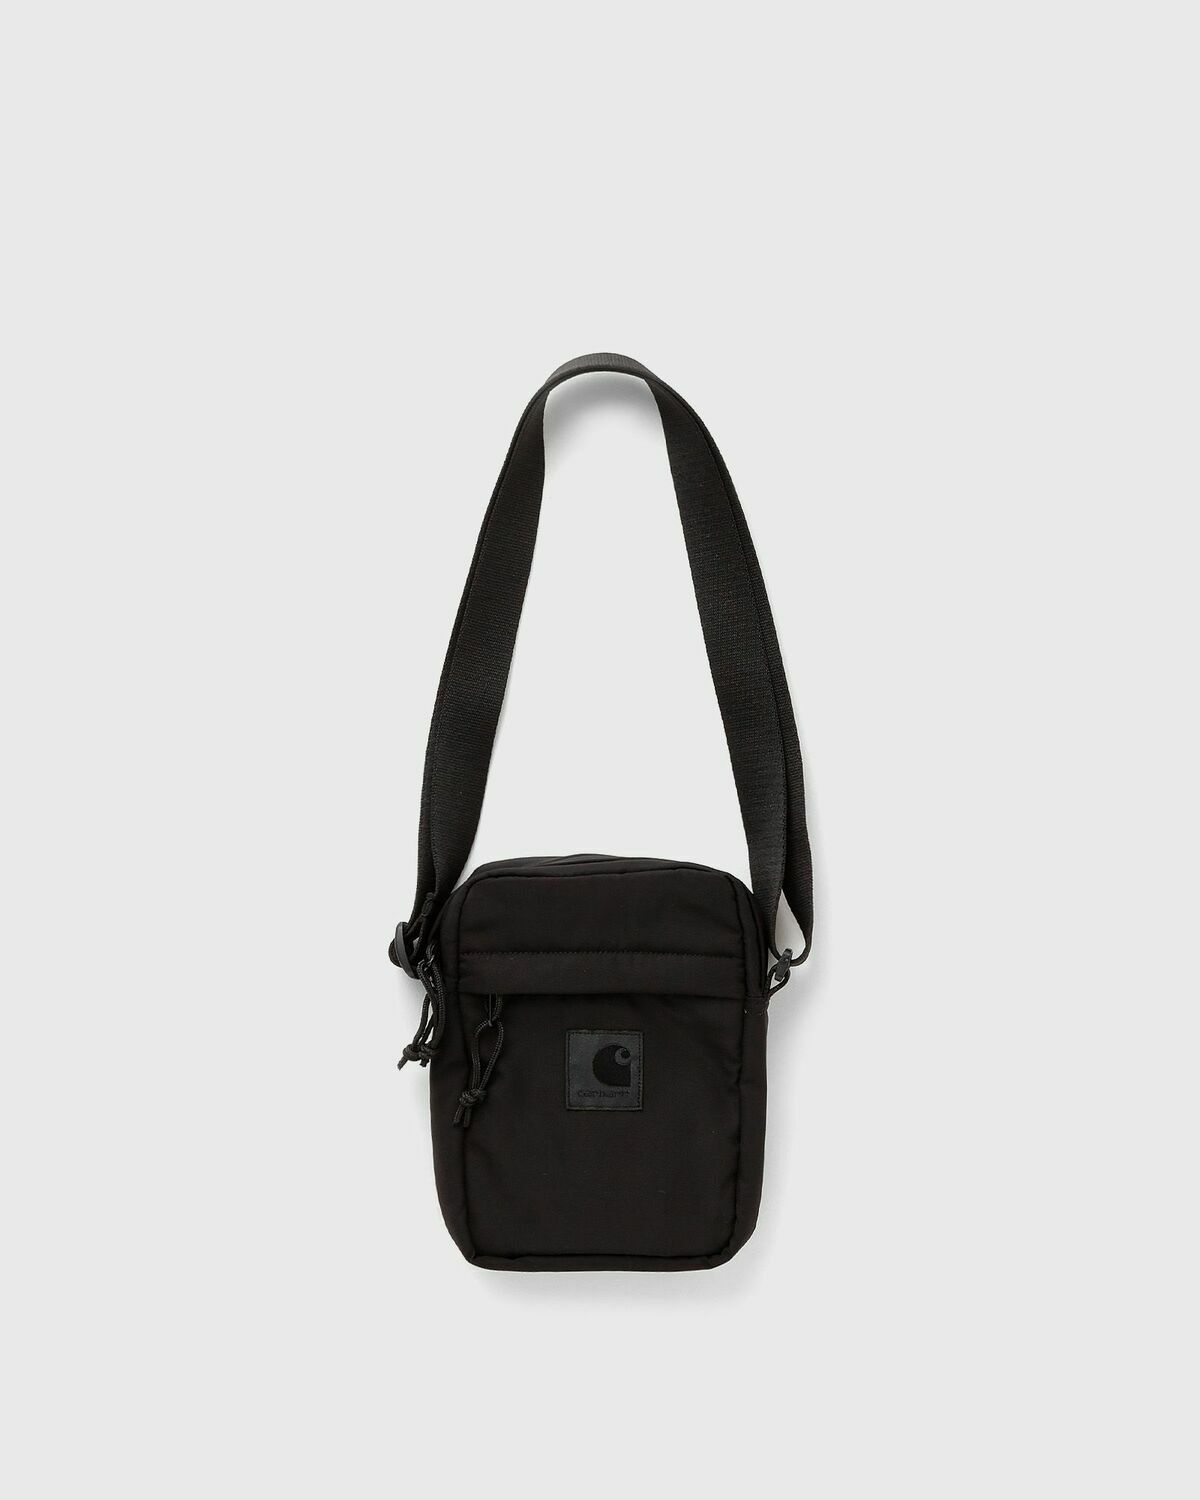 Carhartt WIP Essentials Bag Camo Small Shoulder Bag Crossbody 7x